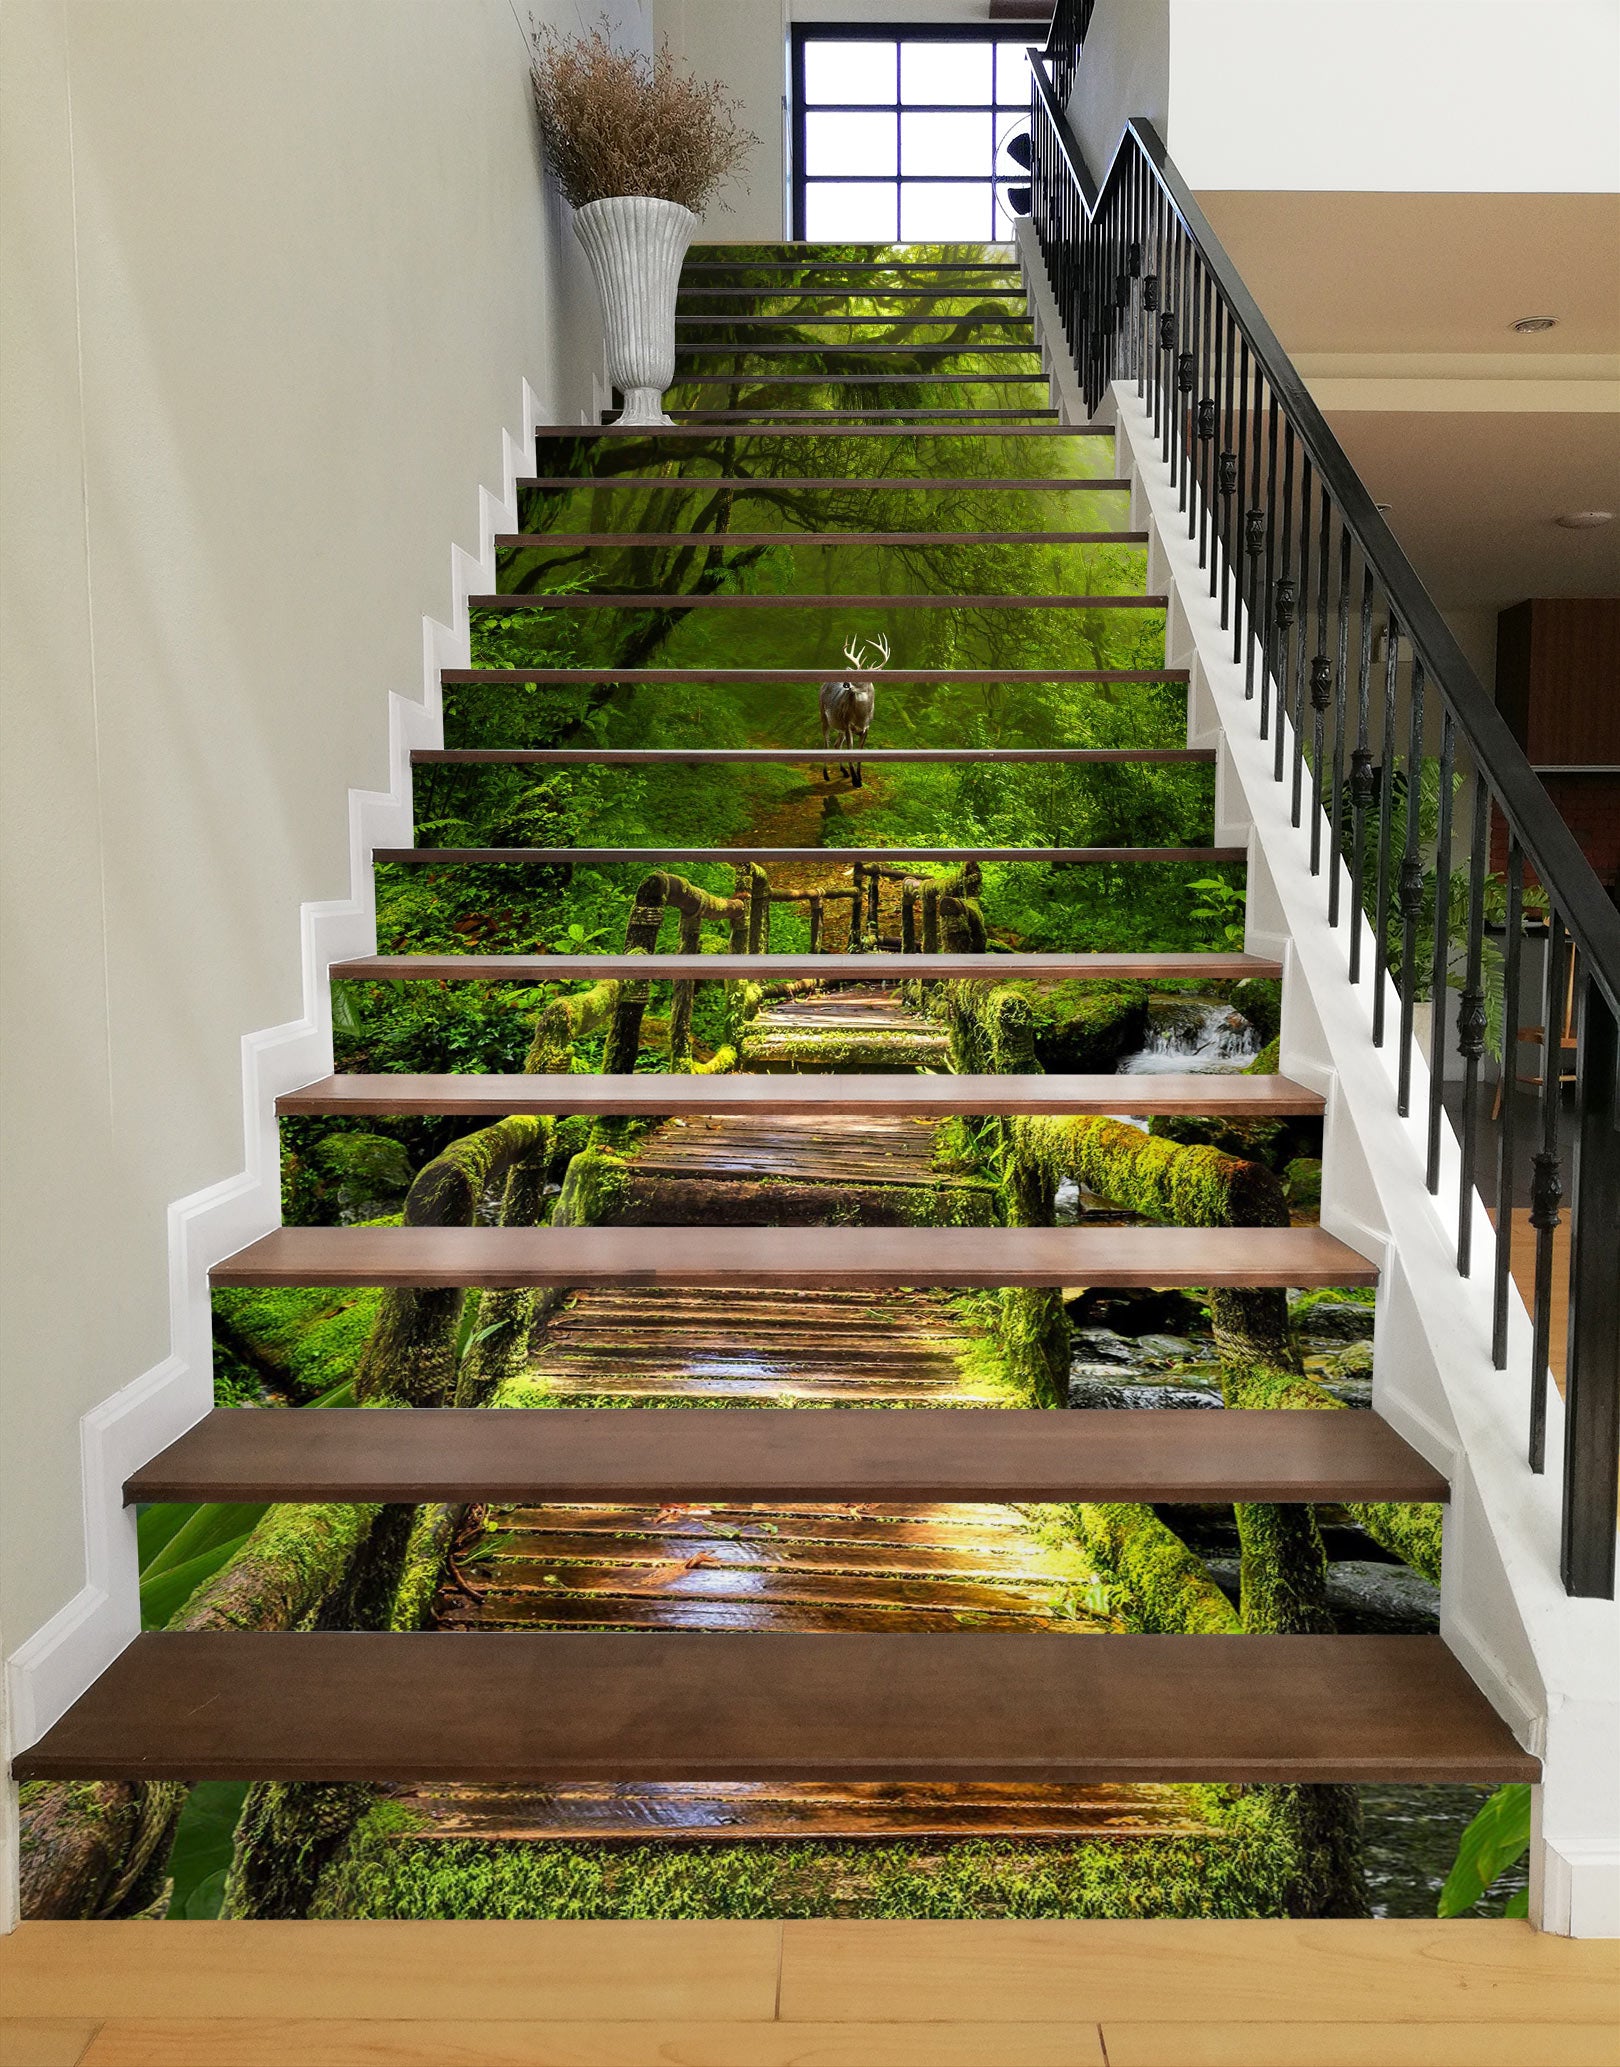 3D Wooden Bridge Winding Green 055 Stair Risers